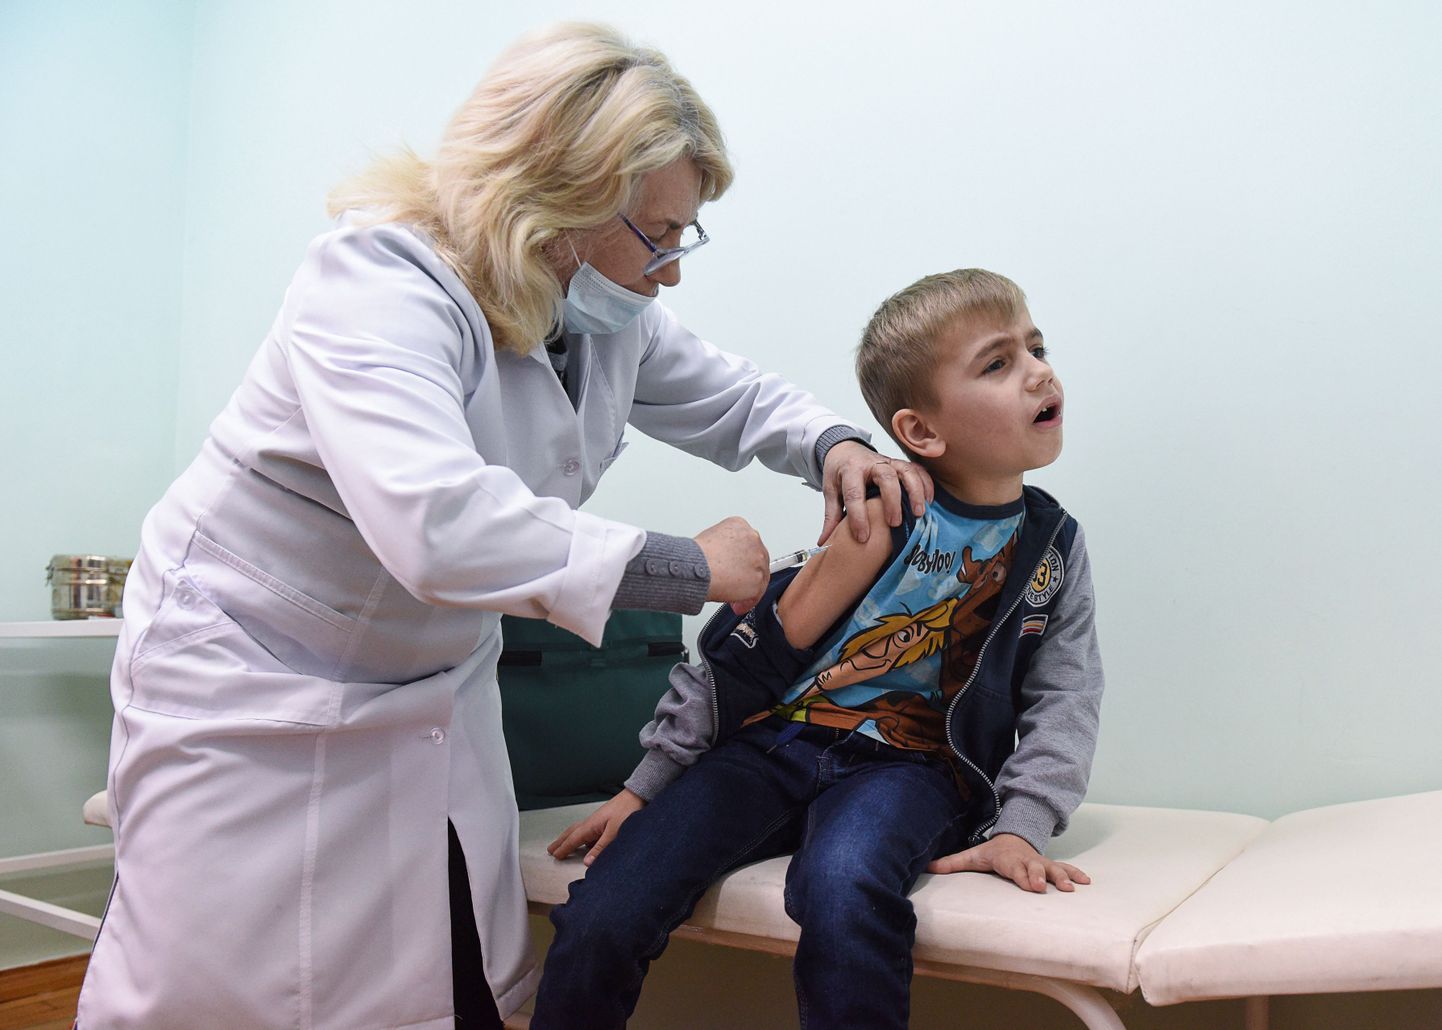 Õde vaktsineerimas poissi leetrite vastu Ukrainas Lapaivka külas Lvivi lähistel. Just Lvivi ümbrus on riigis lahvatanud leetripuhangust enim puudutatud.